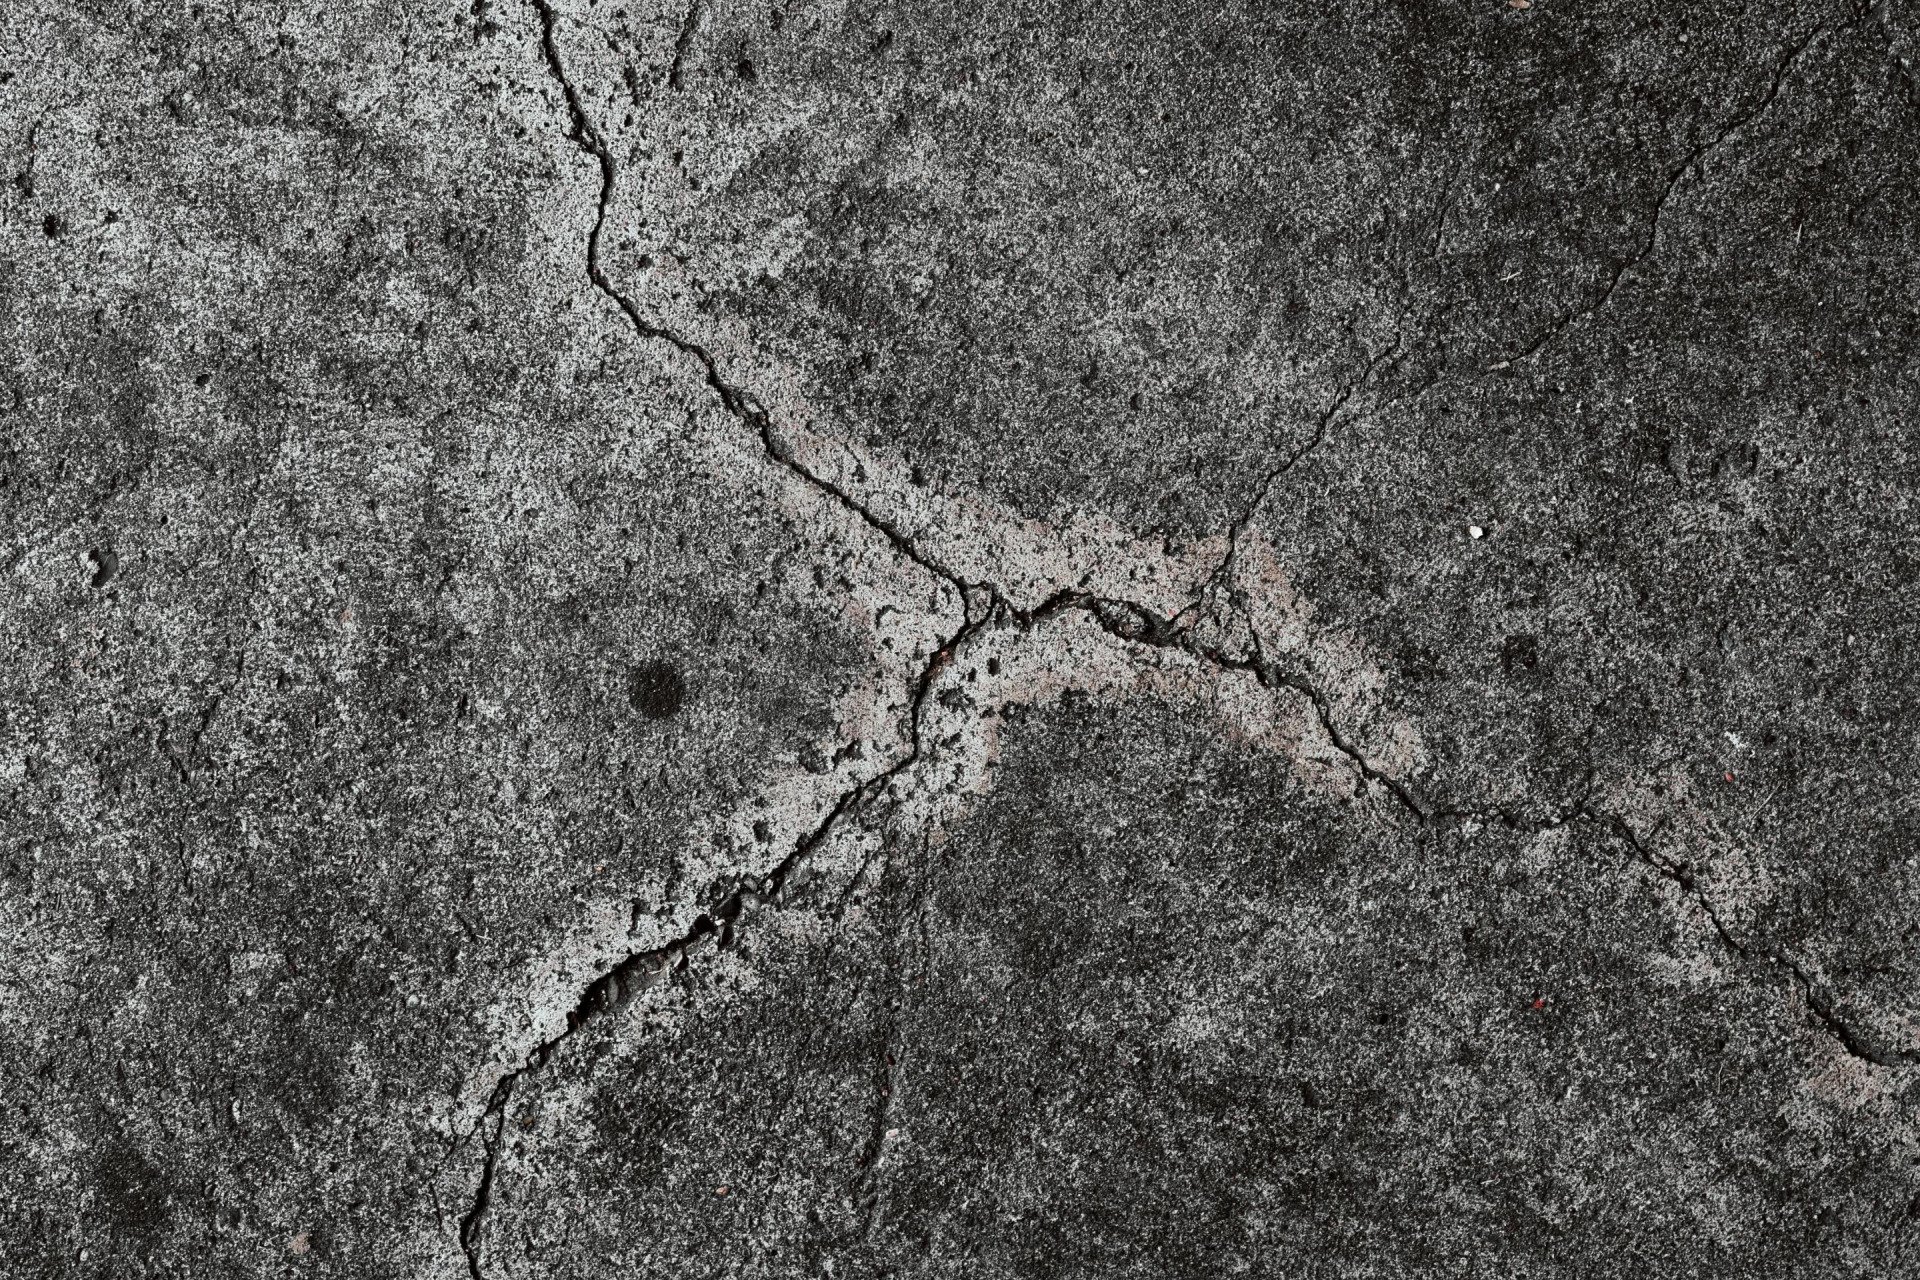 cracked concrete needs repair in Harrisonburg